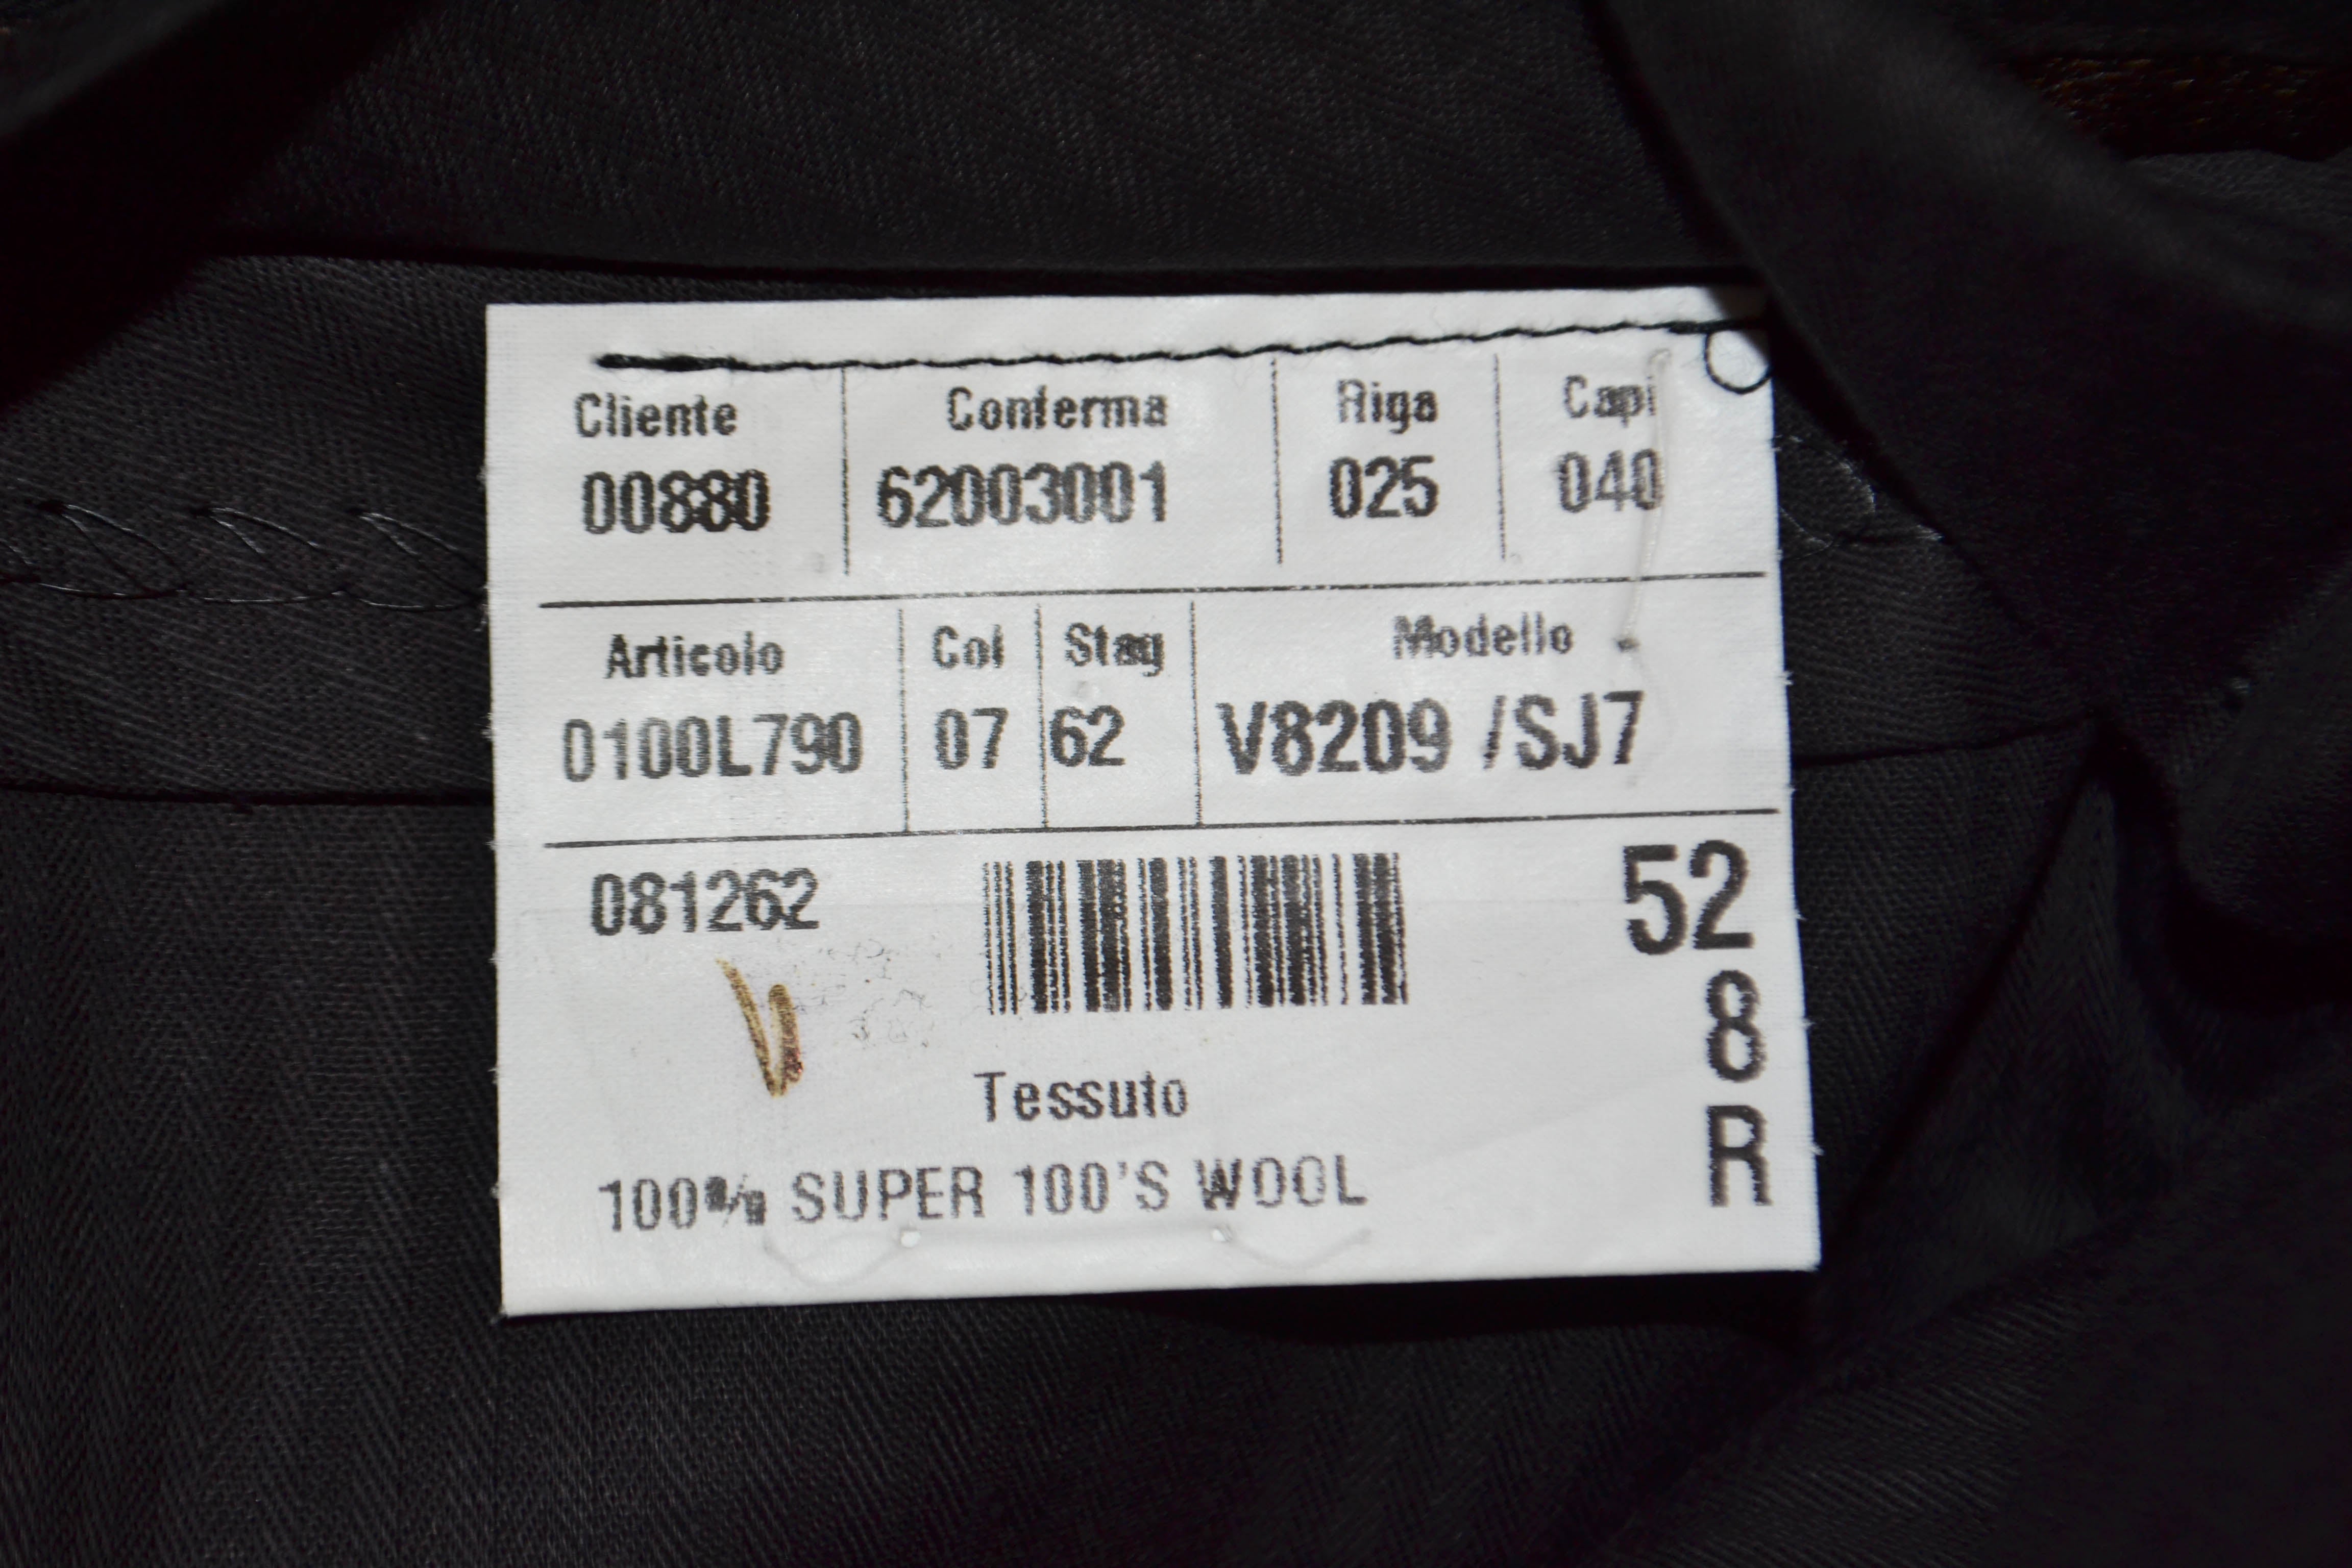 Wool suit Louis Vuitton Grey size 52 FR in Wool - 3305465